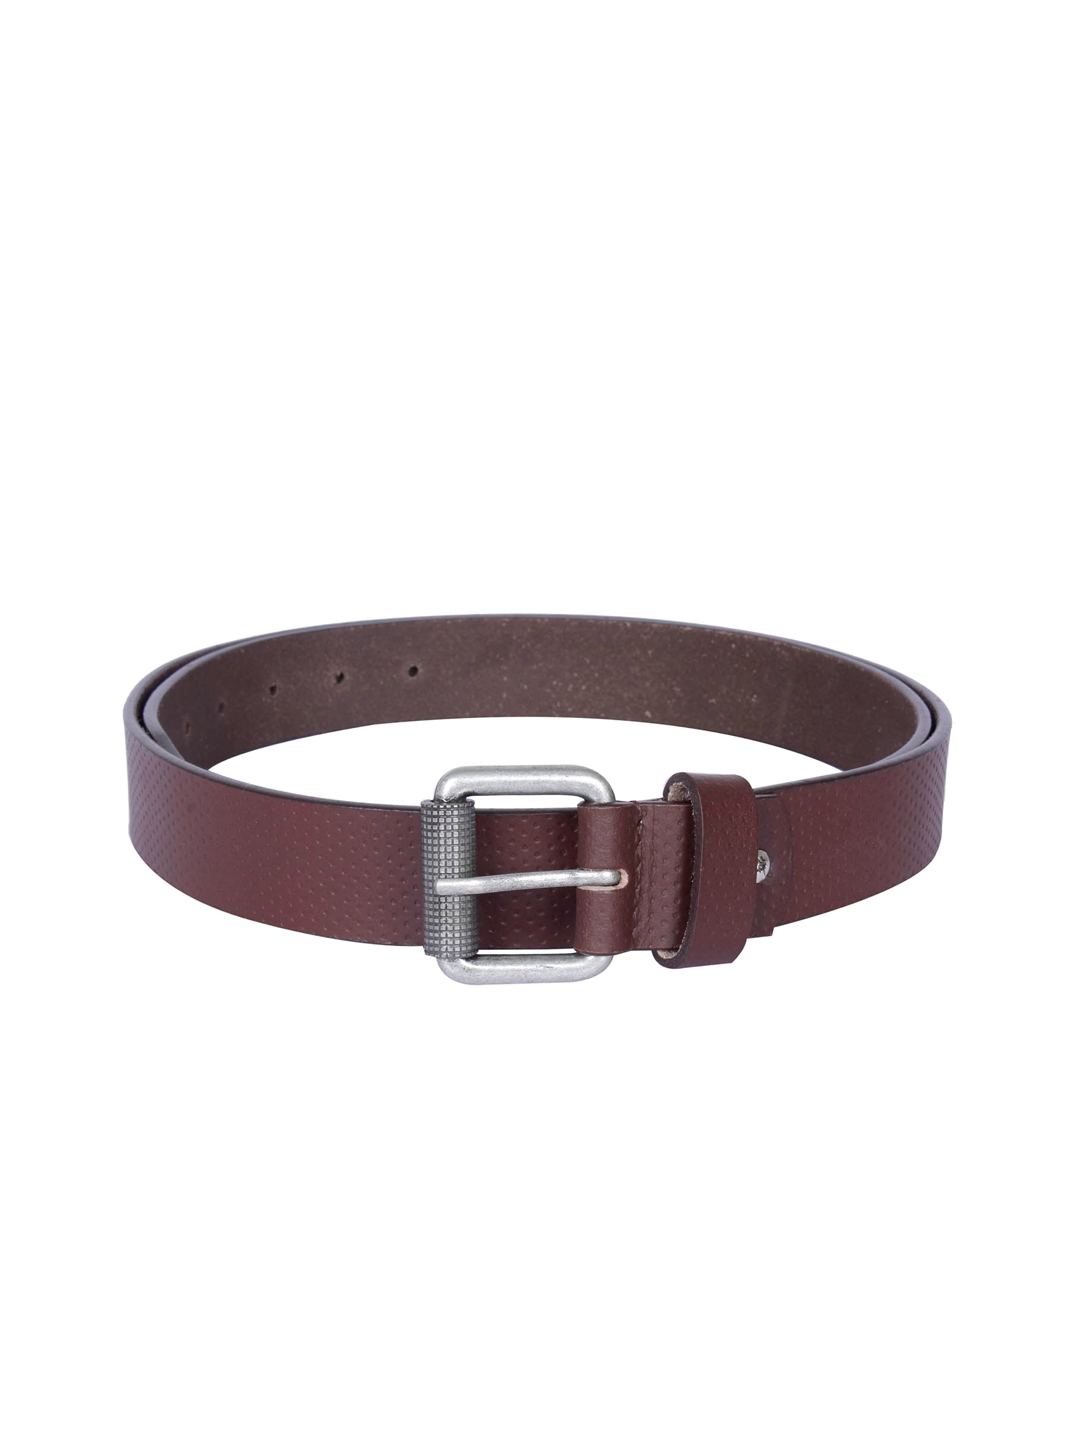 Buy Kara Men Brown Genuine Leather Belt - Belts for Men 1387667 | Myntra